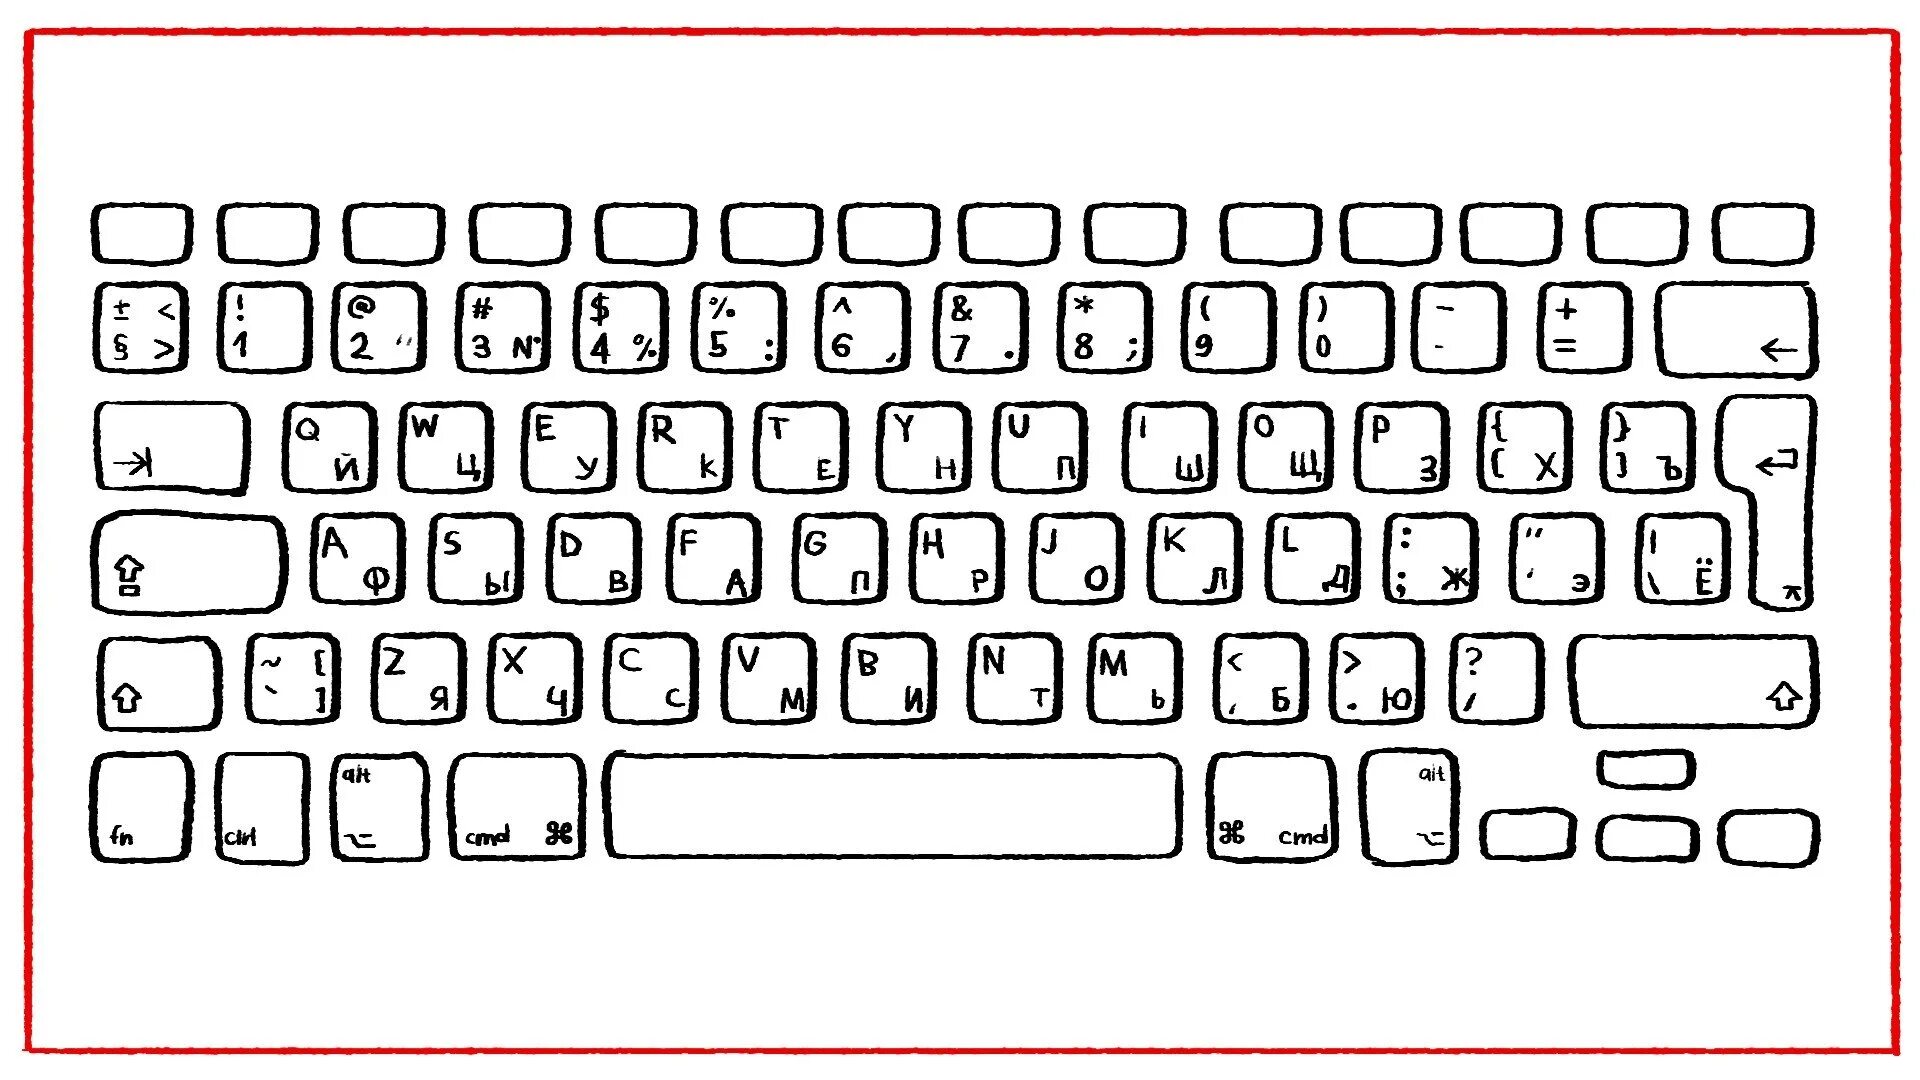 Где печатать на компьютере. Компьютерная клавиатура раскладка русская и английская. Клавиатура раскраска. Распечатка клавиатуры компьютера. Клавиатура компьютера трафарет.